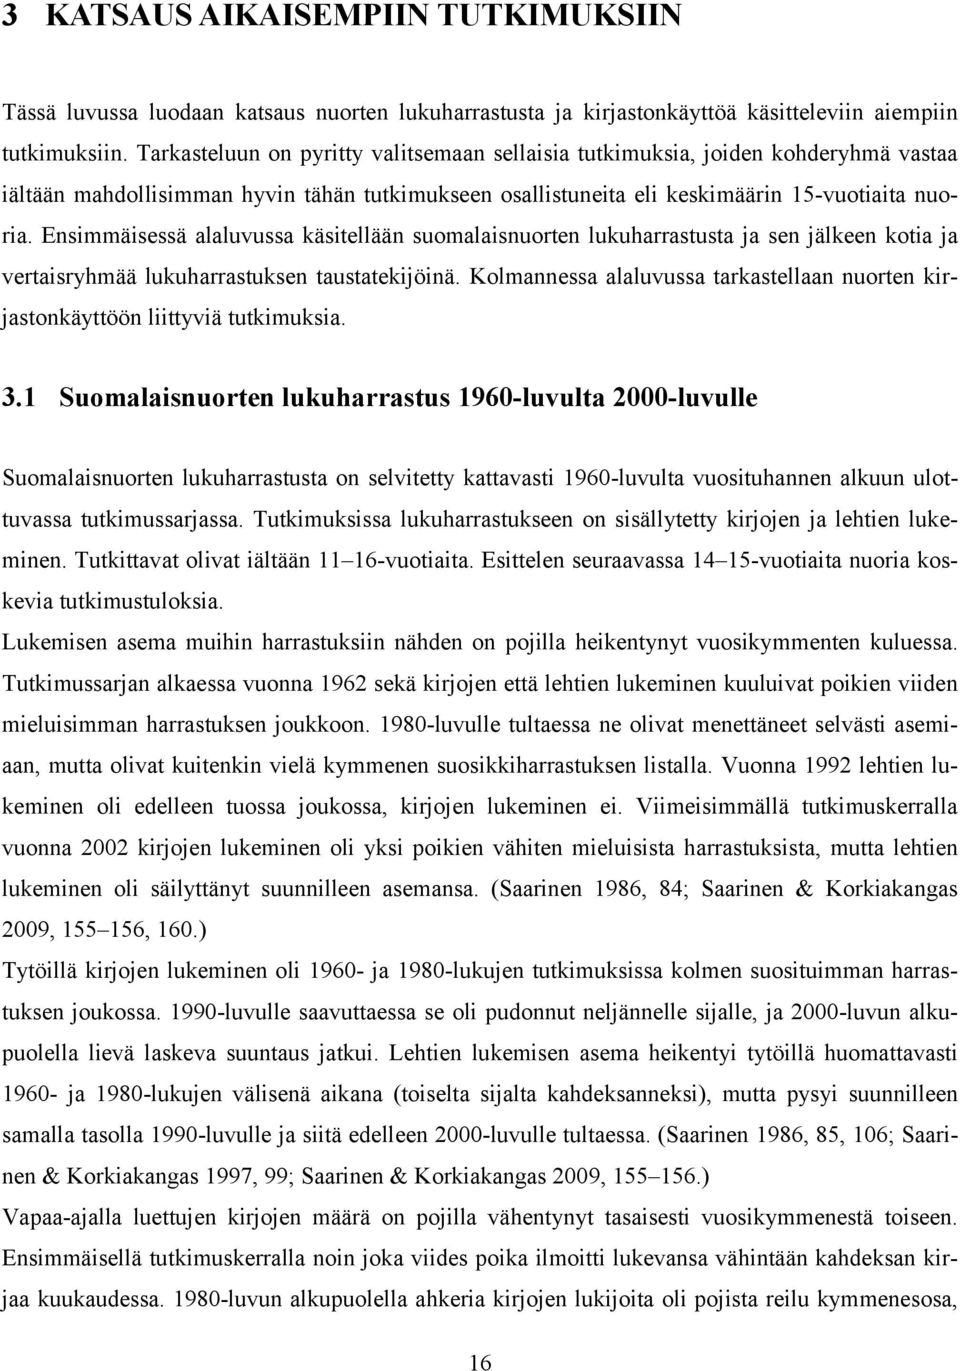 Ensimmäisessä alaluvussa käsitellään suomalaisnuorten lukuharrastusta ja sen jälkeen kotia ja vertaisryhmää lukuharrastuksen taustatekijöinä.